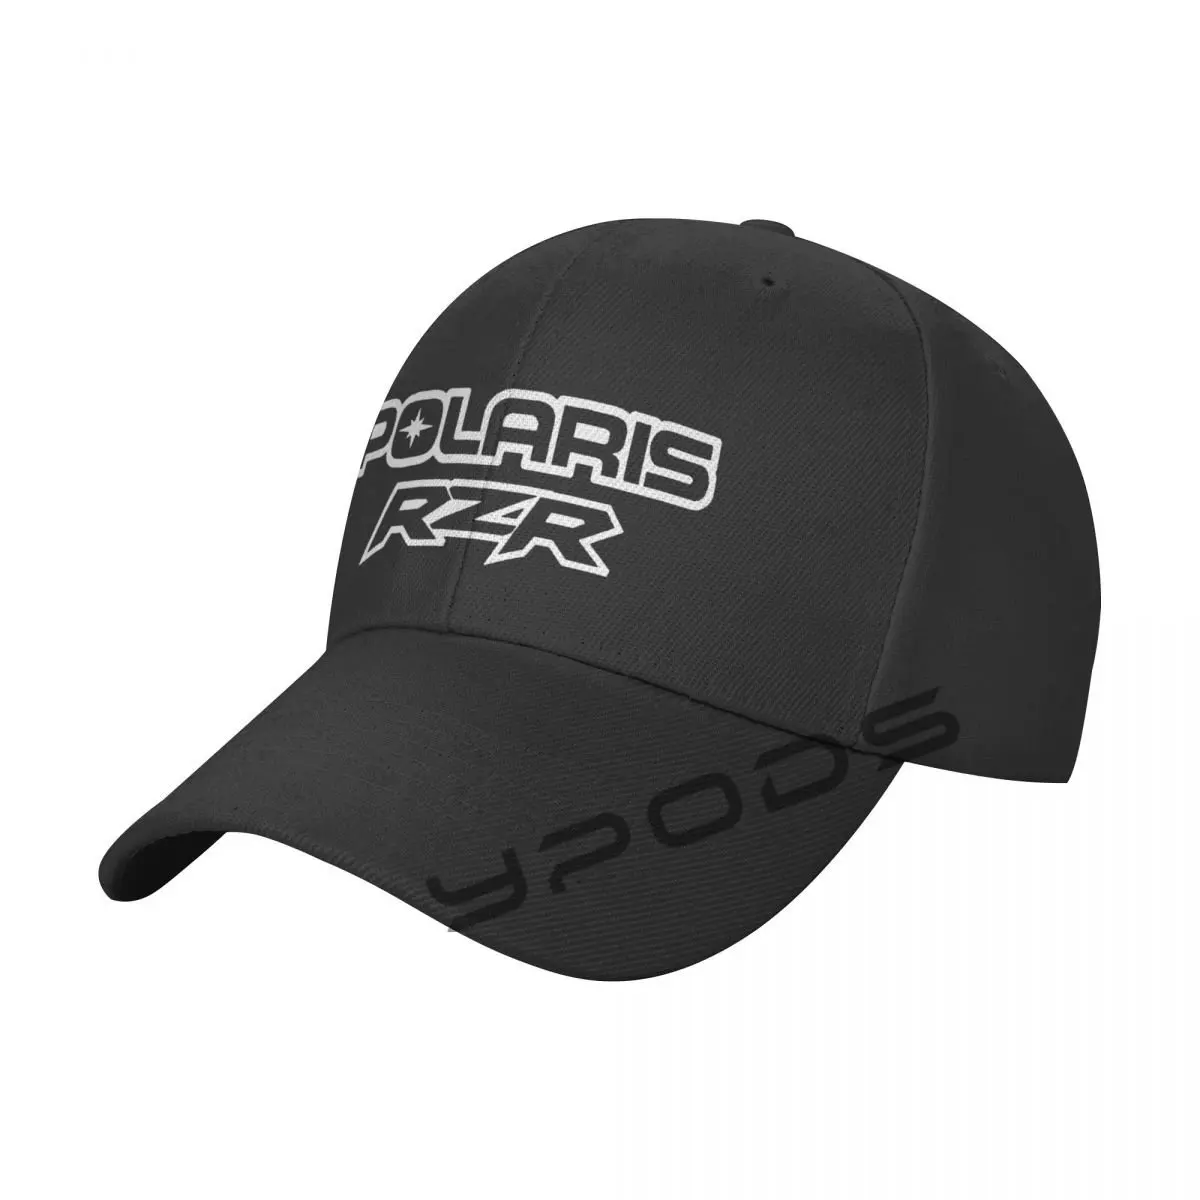 

Polaris Rzr Utv 1 Baseball Cap For Women Men Snapback Hat Casquette Femme Streetwear Sun Visor